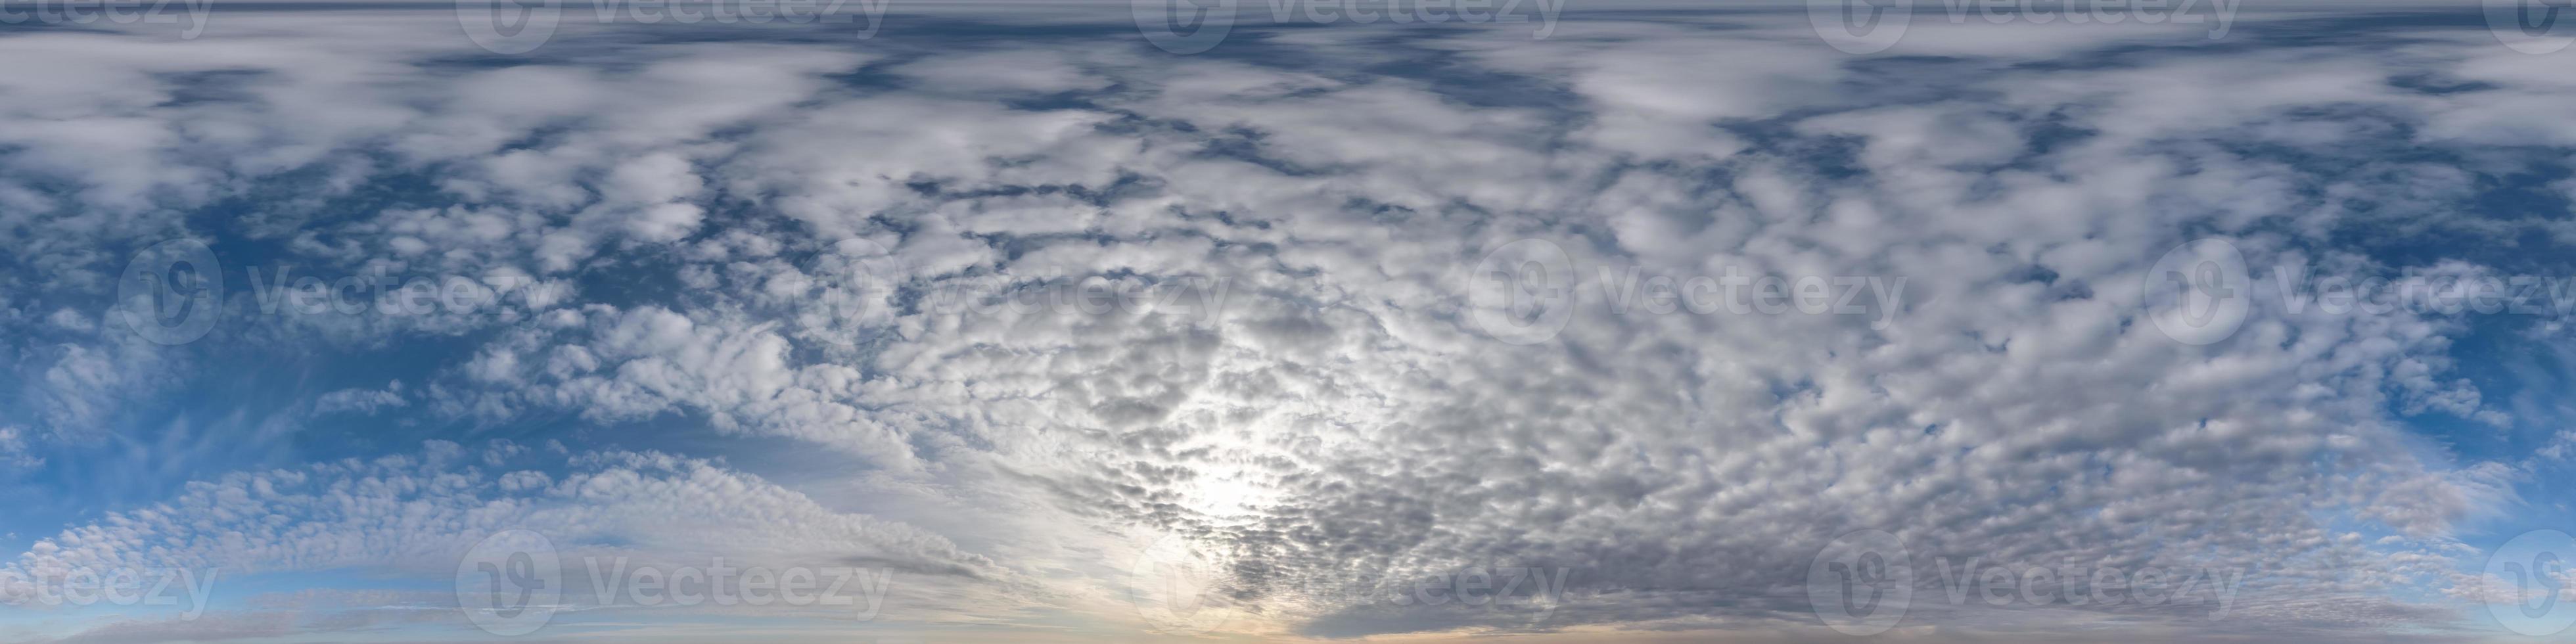 kväll mörkblå himmel hdr 360 panorama med vita vackra moln i sömlös projektion med zenit för användning i 3d-grafik eller spelutveckling som skydome eller redigera drönarbild för himmelsbyte foto